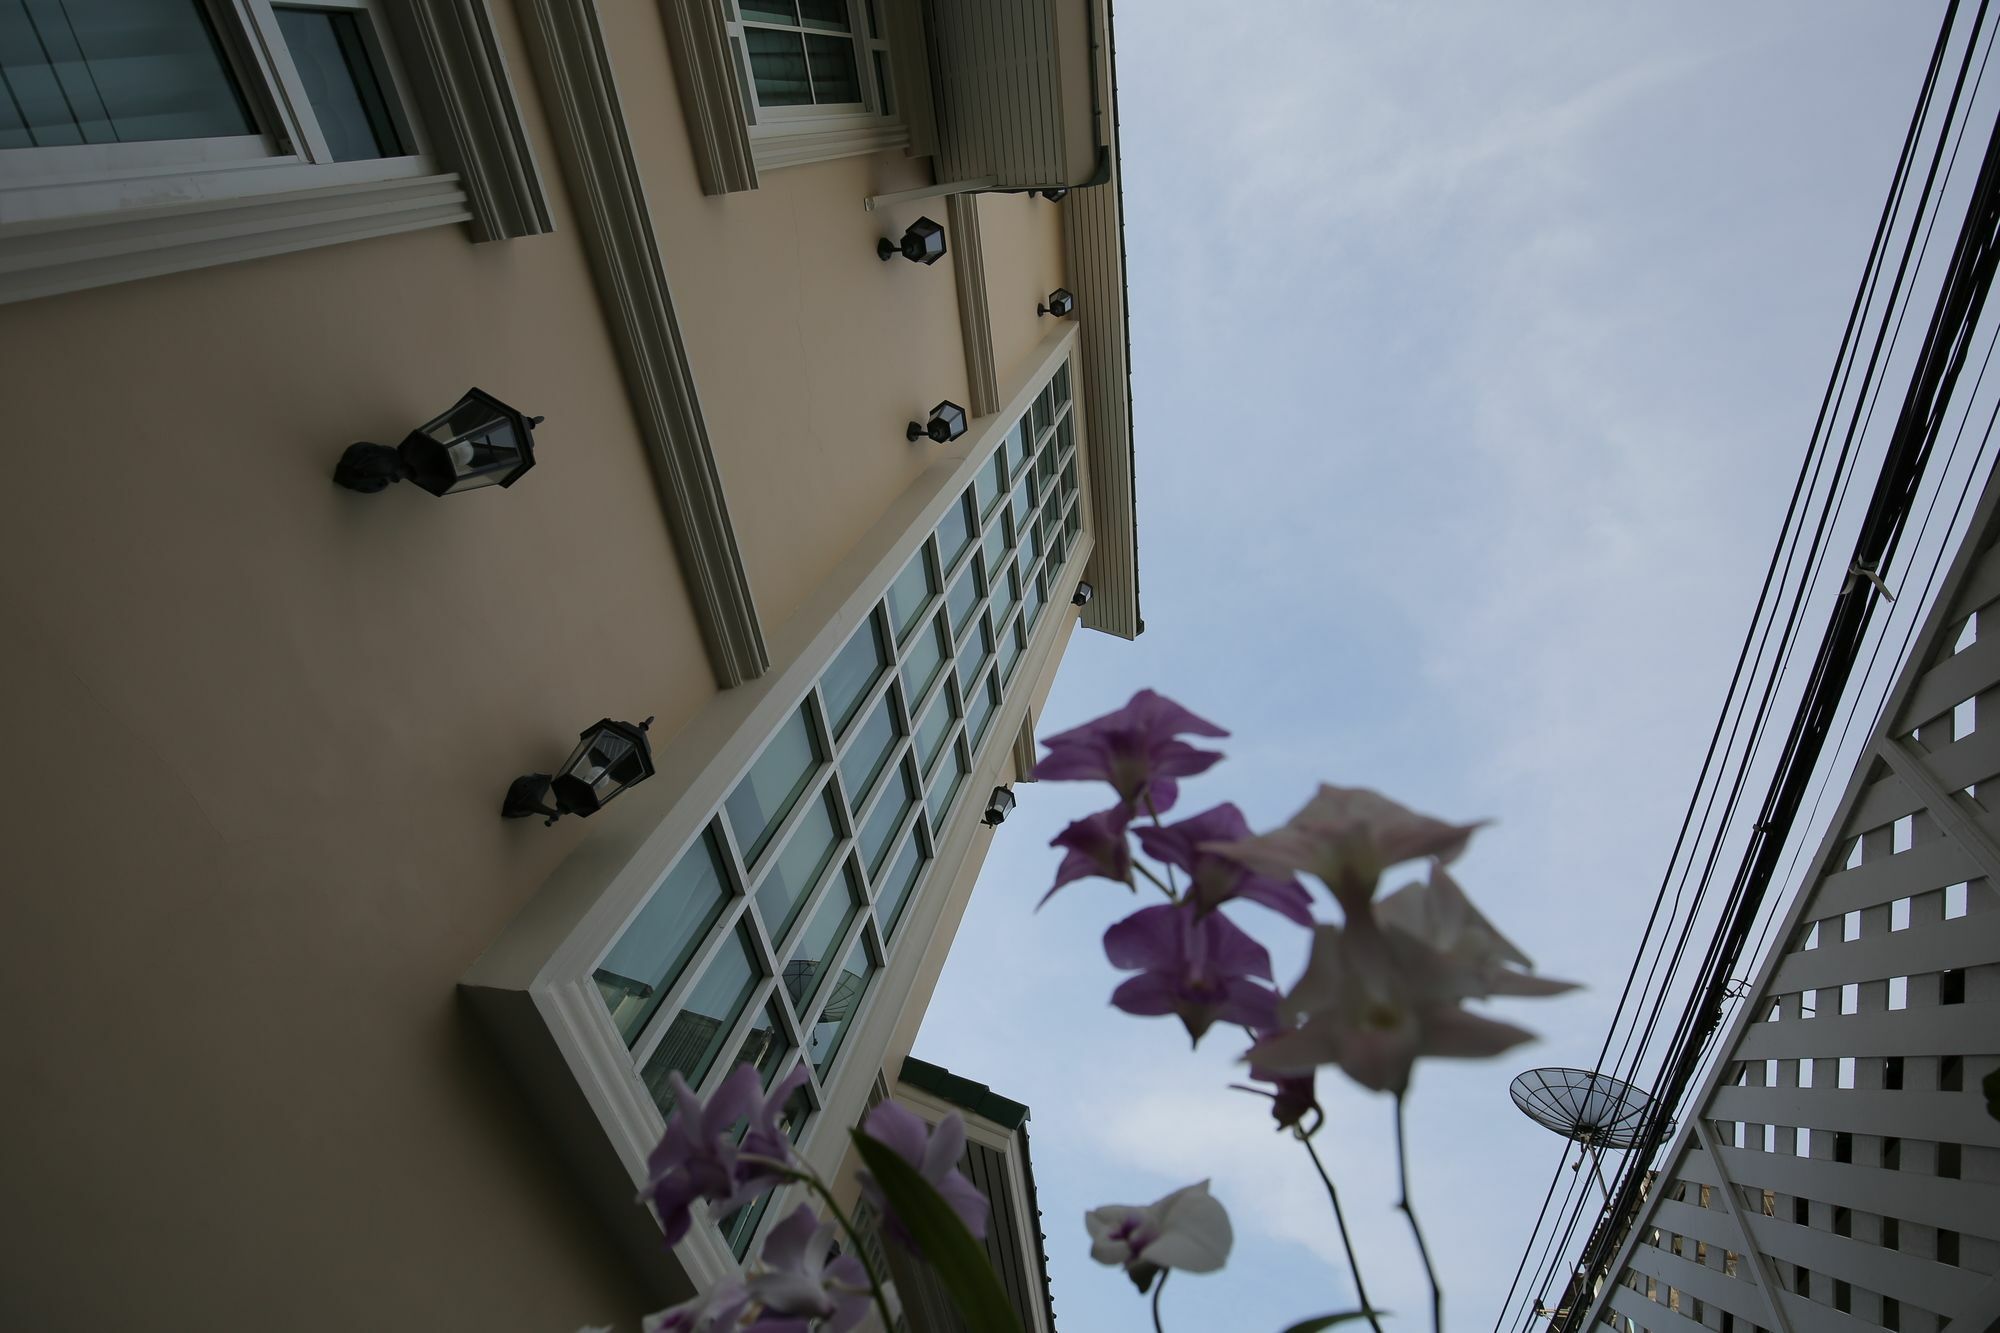 Отель The Orchid House 153 Бангкок Экстерьер фото